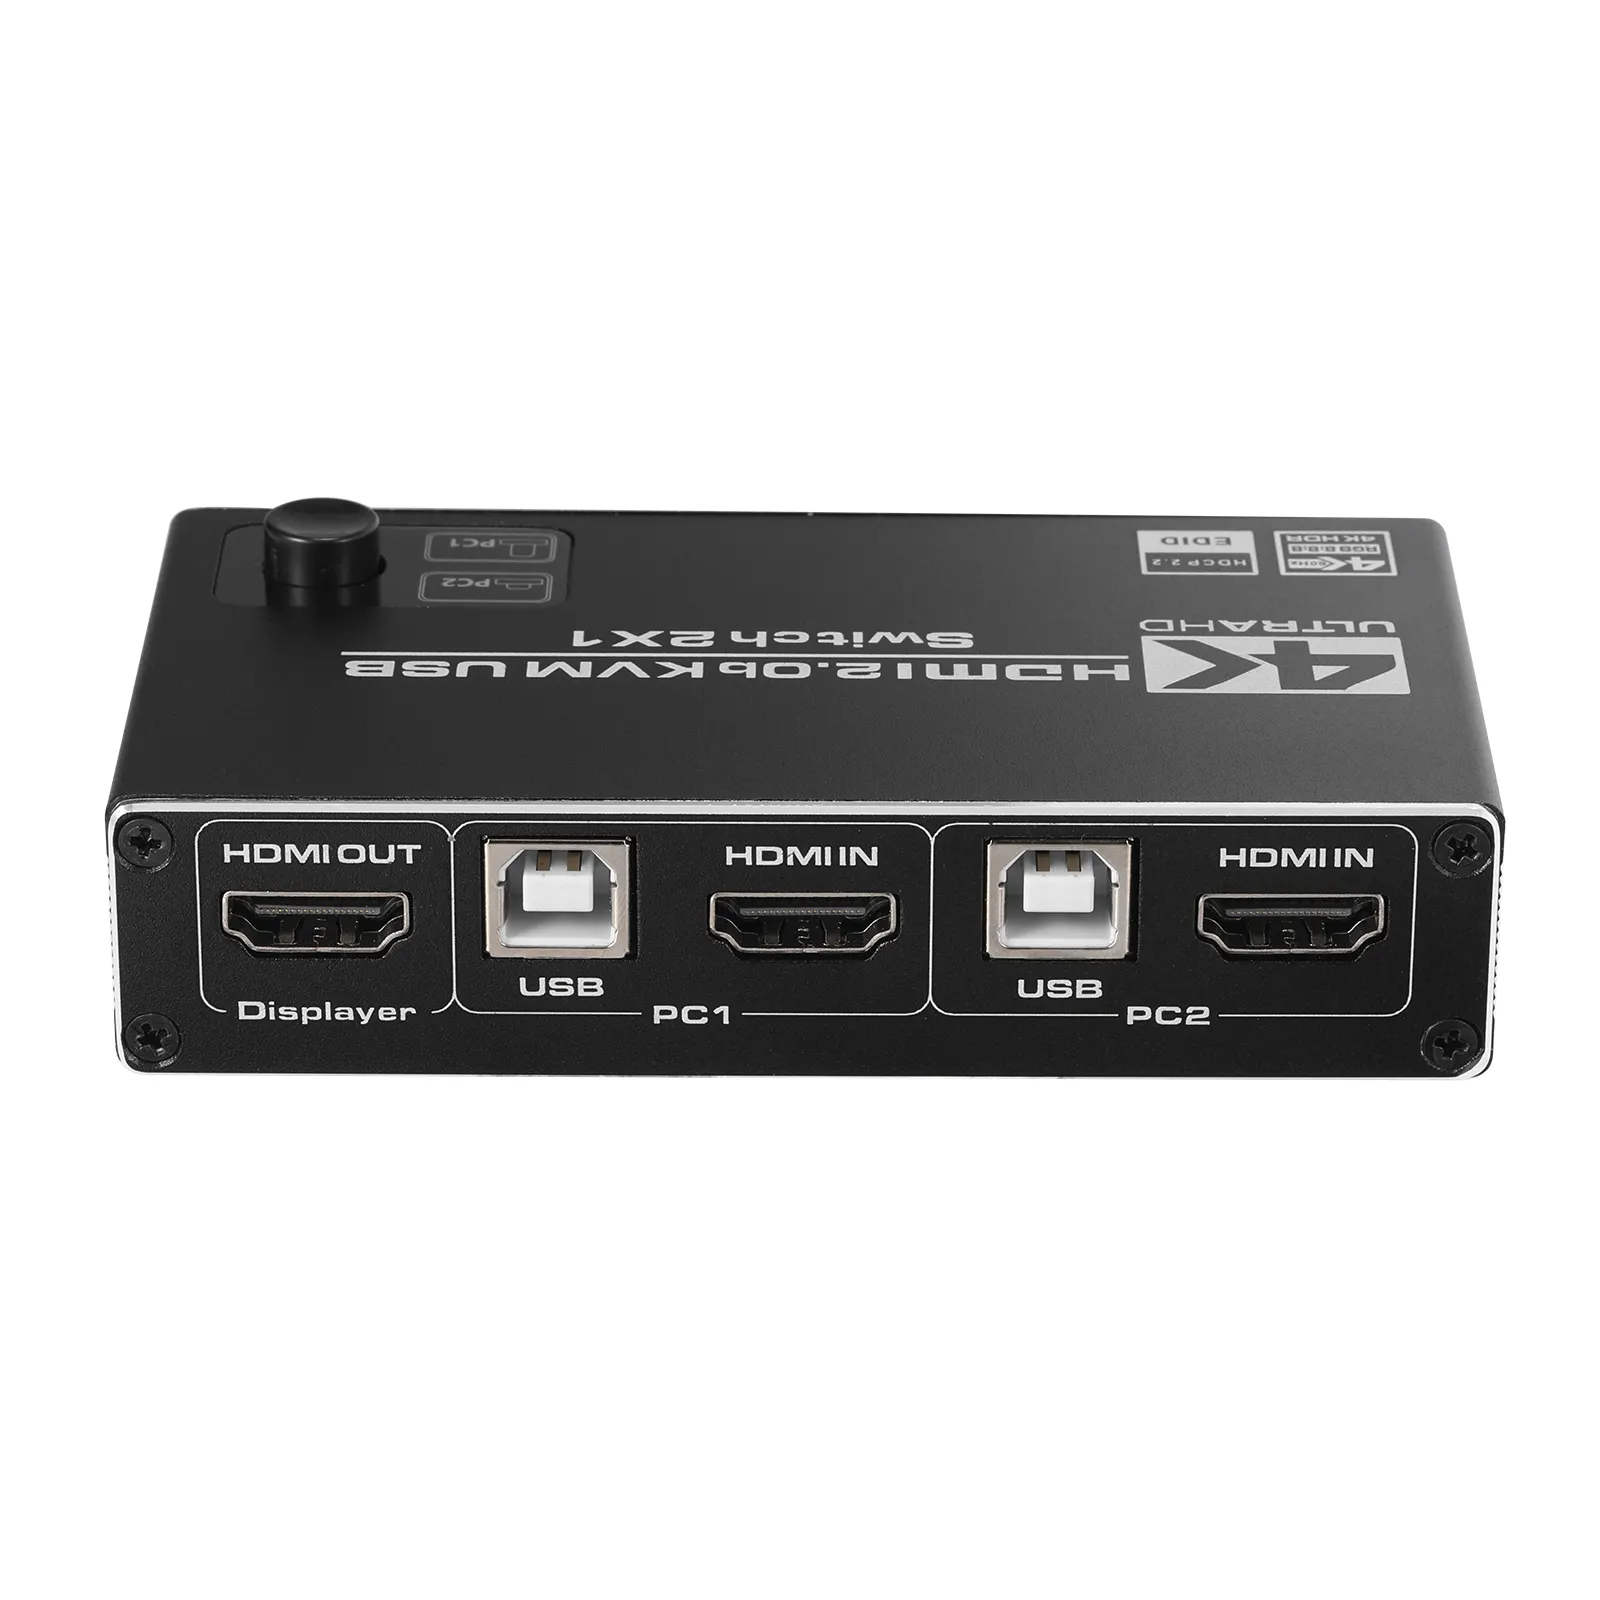 2 पोर्ट यूएसबी HDMI KVM स्विच 4K @ 60Hz आरजीबी/YUV एचडीआर HDMI 2.0 स्विचर 2X1 समर्थन कीबोर्ड और माउस प्रिंटर